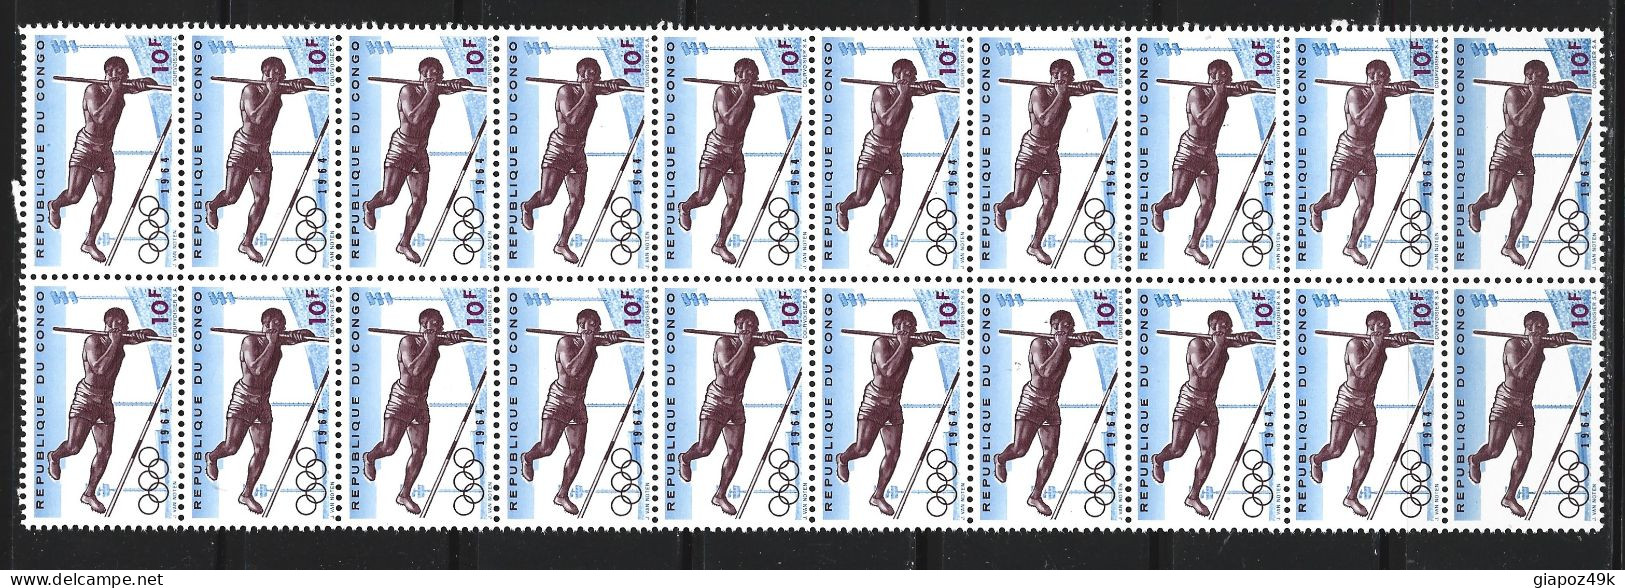 ● Republique Du CONGO 1964 ֍ OLIMPIADI Di Tokio ● Blocco Di 20 Valori ● Serie Completa ● Cat. ? € ● L XXX ● - Unused Stamps